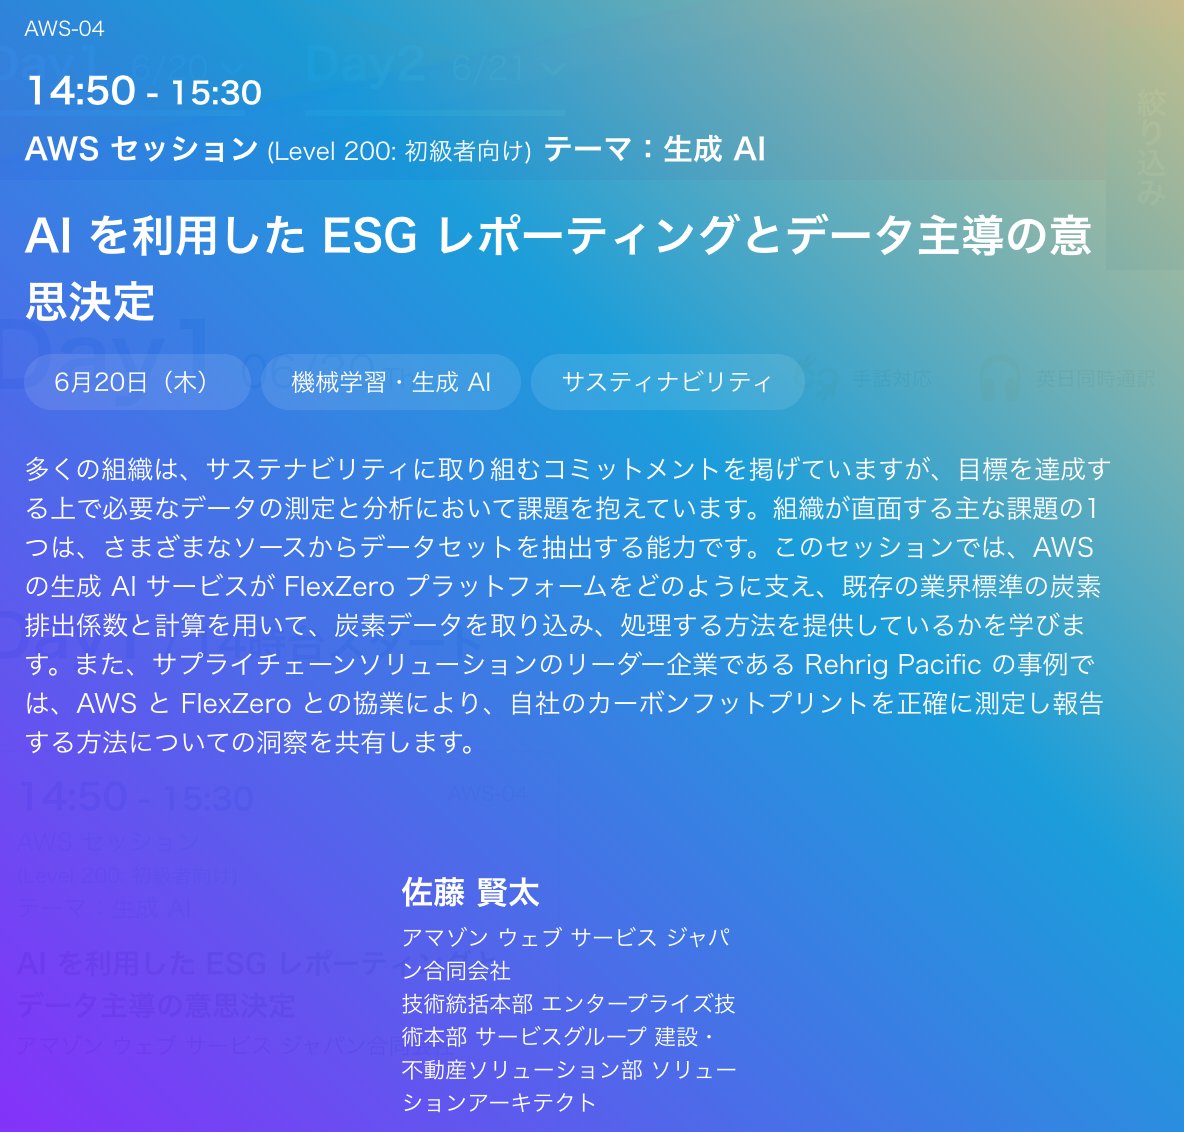 AWS Summit Japan にて「AI を利用した ESG レポーティングとデータ主導の意思決定」というタイトルで登壇します。
企業のESGレポーティングと分析業務やシステムで課題をお持ちの方は、是非ご参加ください！
aws.amazon.com/jp/summits/jap…